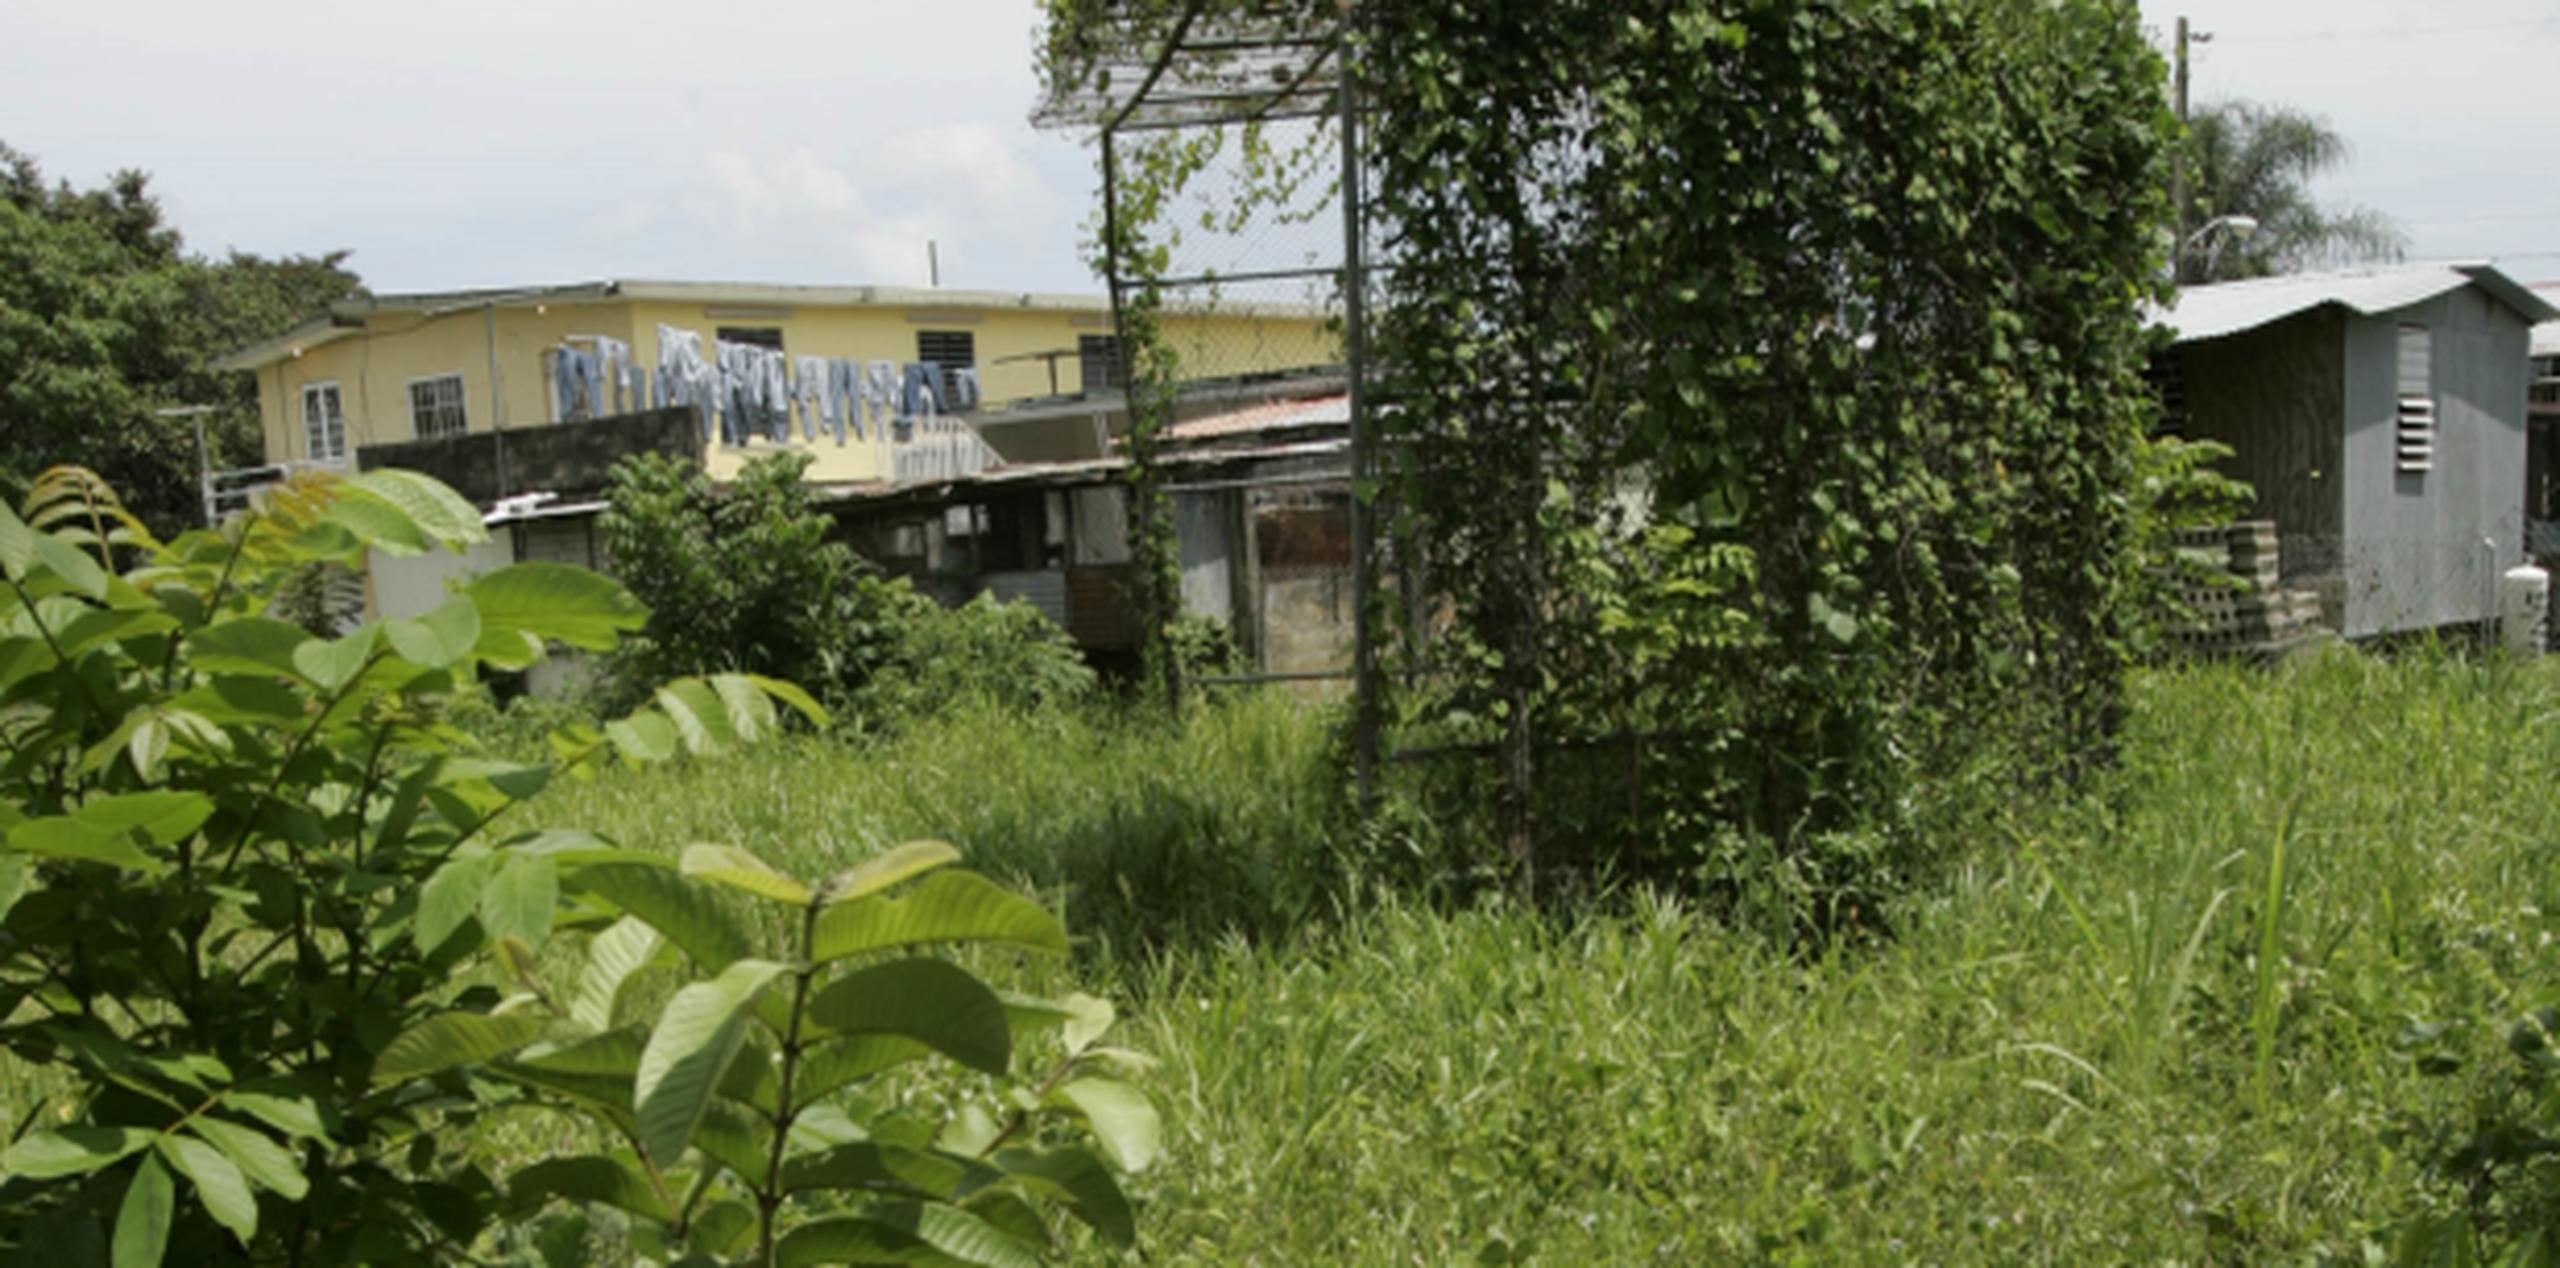 La UPR tiene ocho propiedades abandonadas a las que no le han encontrado uso académico, administrativo o investigativo. (Archivo)